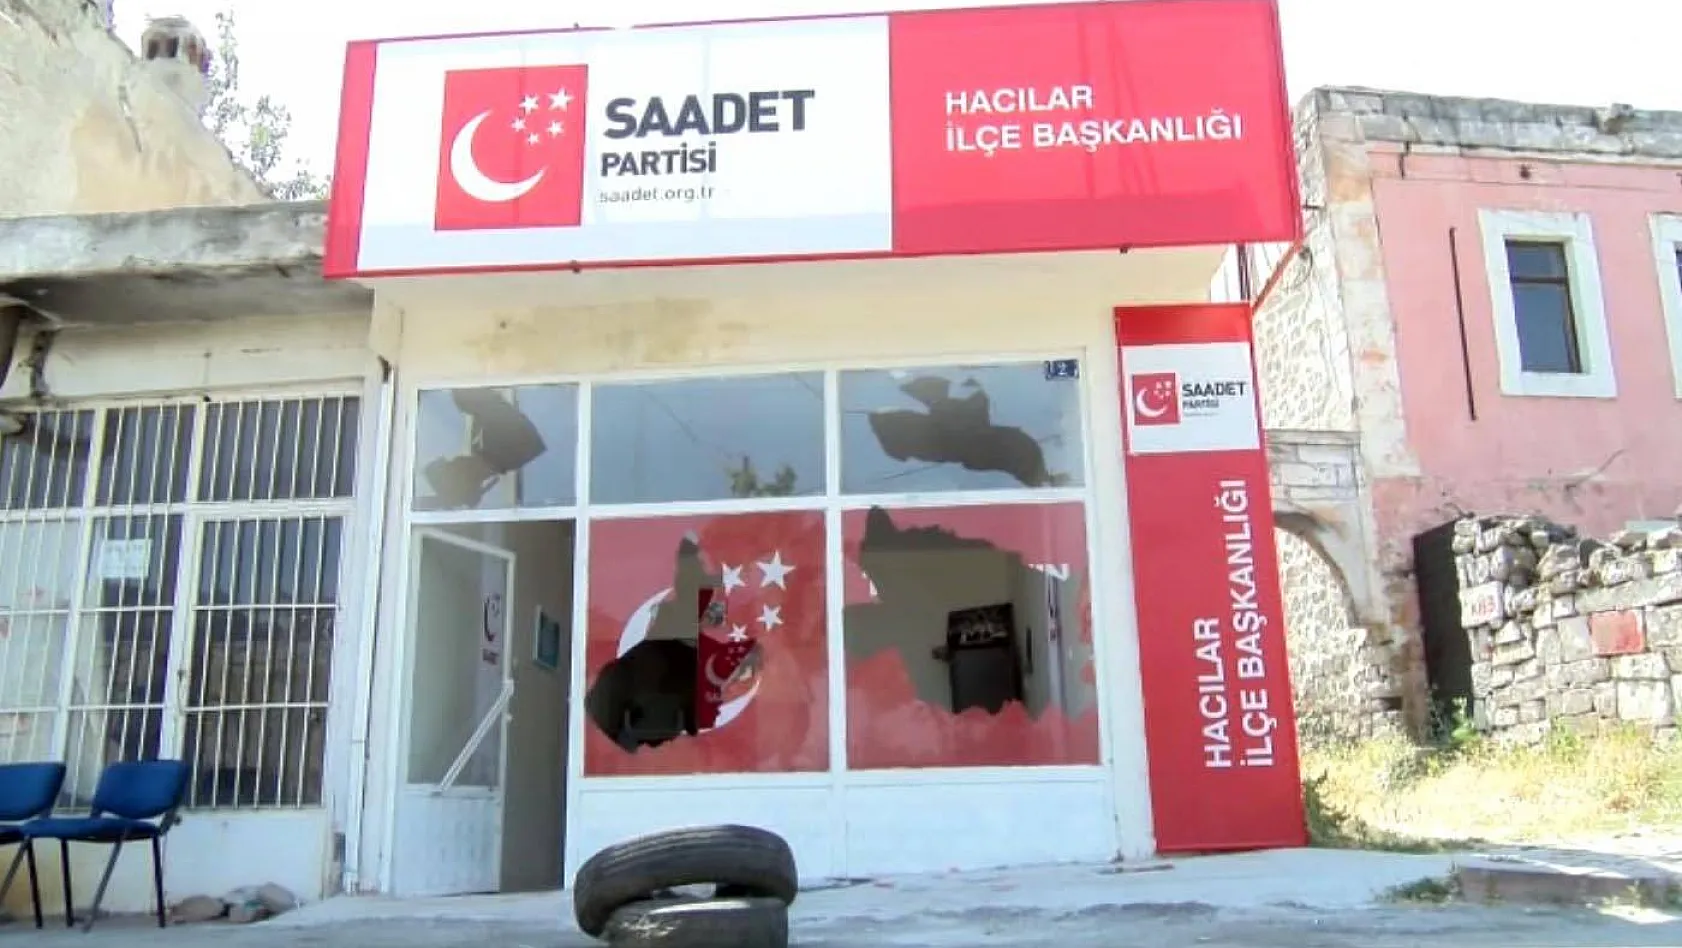 Saadet Partisi'nin ilçe binasının camlarının kırılması olayının arkasından sevgililerin tartışması çıktı